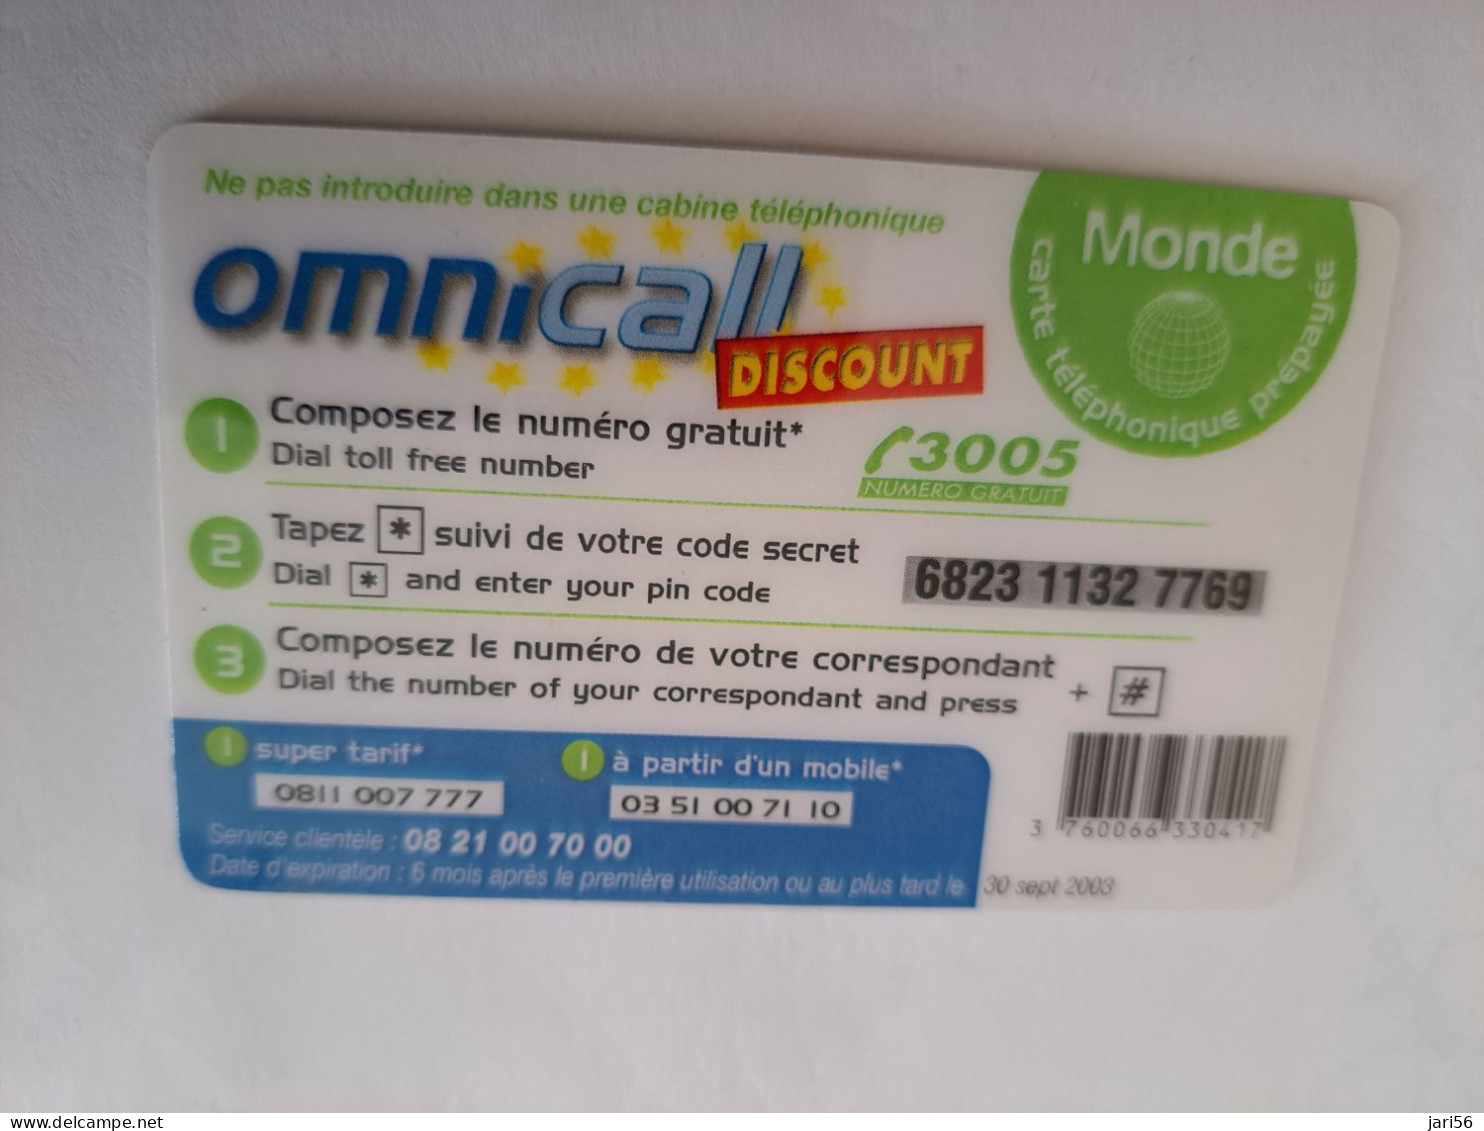 FRANCE/FRANKRIJK  / € 7,5 / OMNICALL MONDE / DISCOUNT     / PREPAID  USED         ** 14724** - Mobicartes (GSM/SIM)